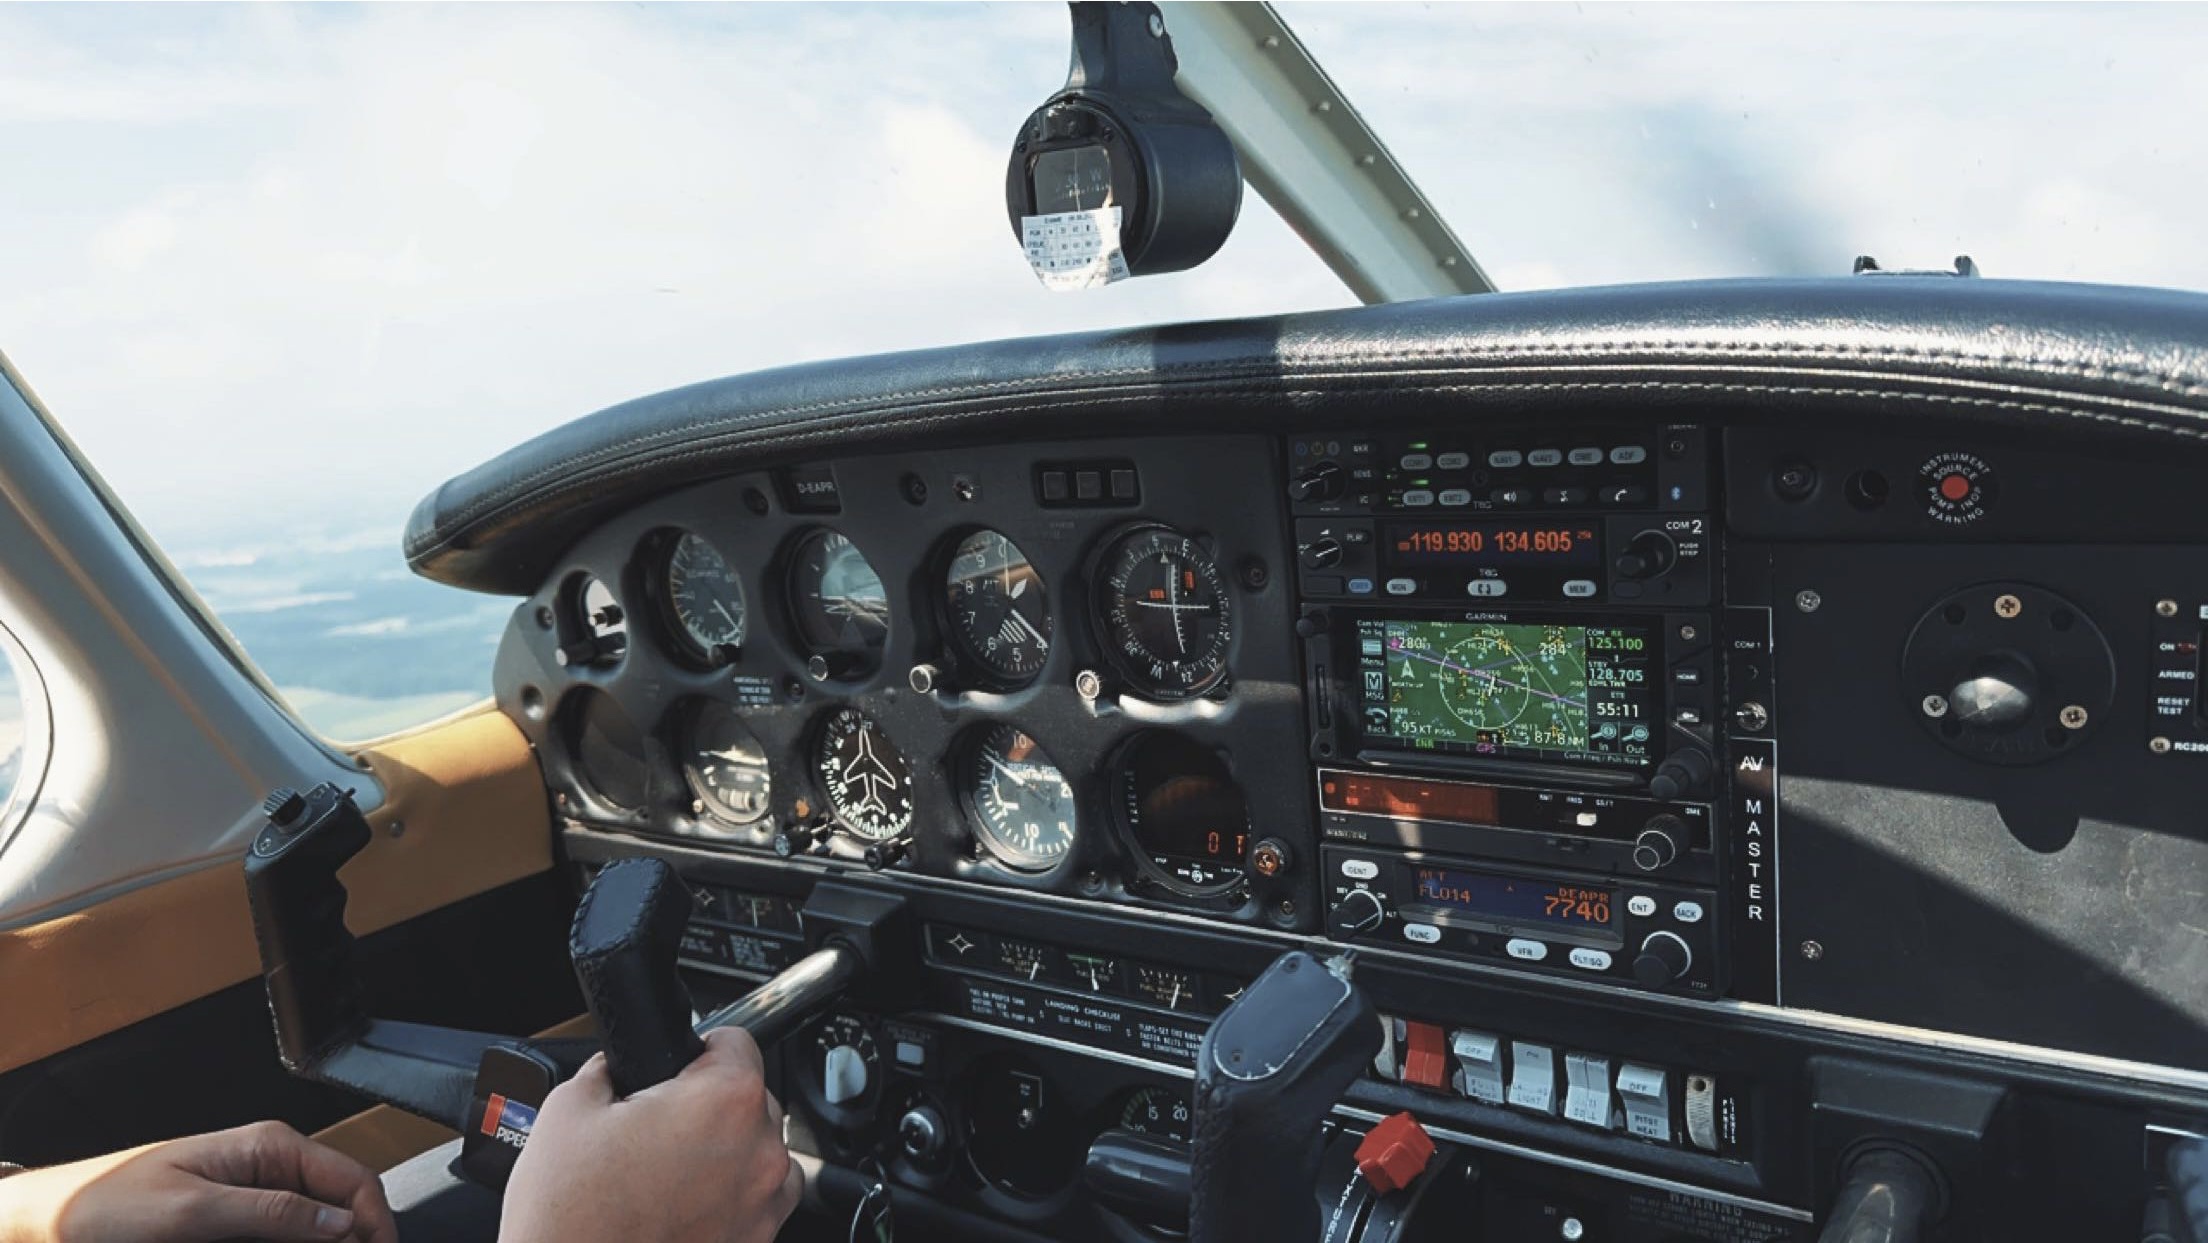 Das Cockpit einer Piper PA-28 während des Fluges. Eine Detailaufnahme mit Blick auf die Instrumente und das Steuerhorn.